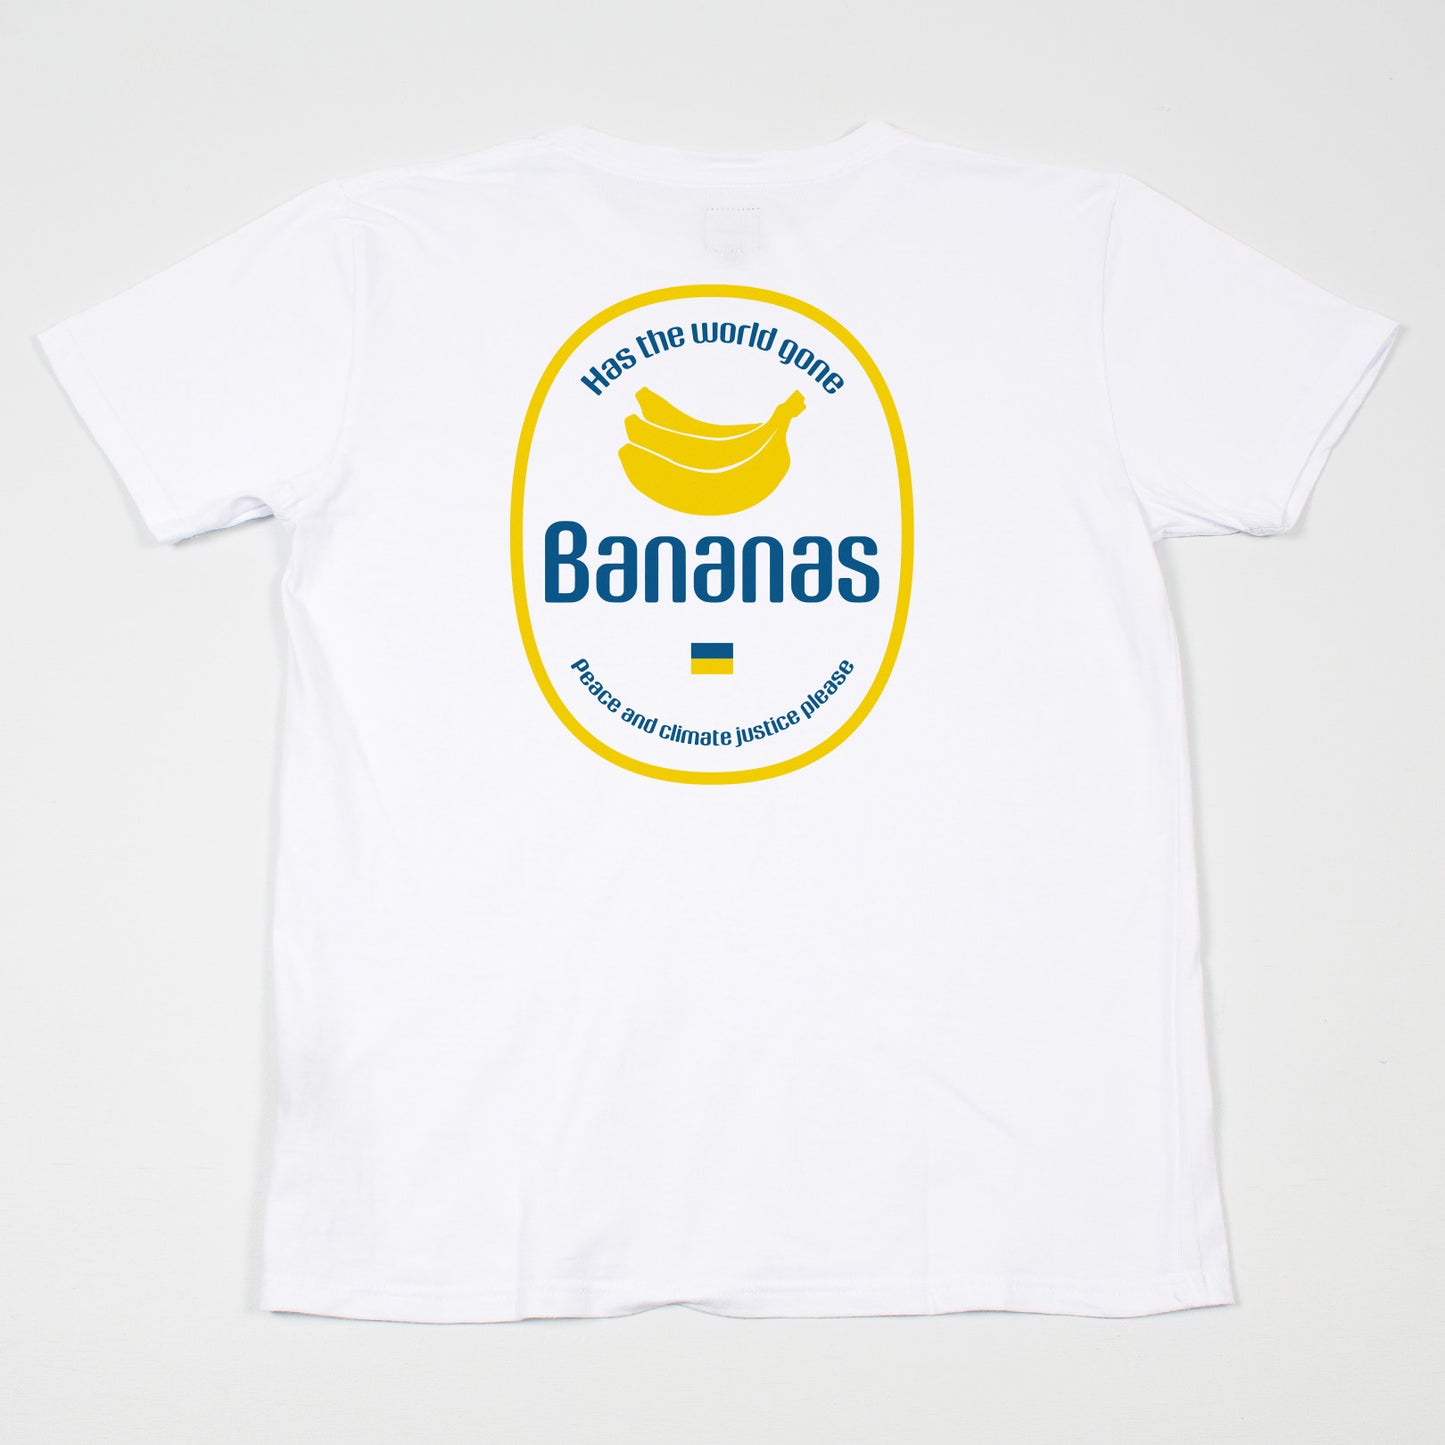 Bananas white t-shirt